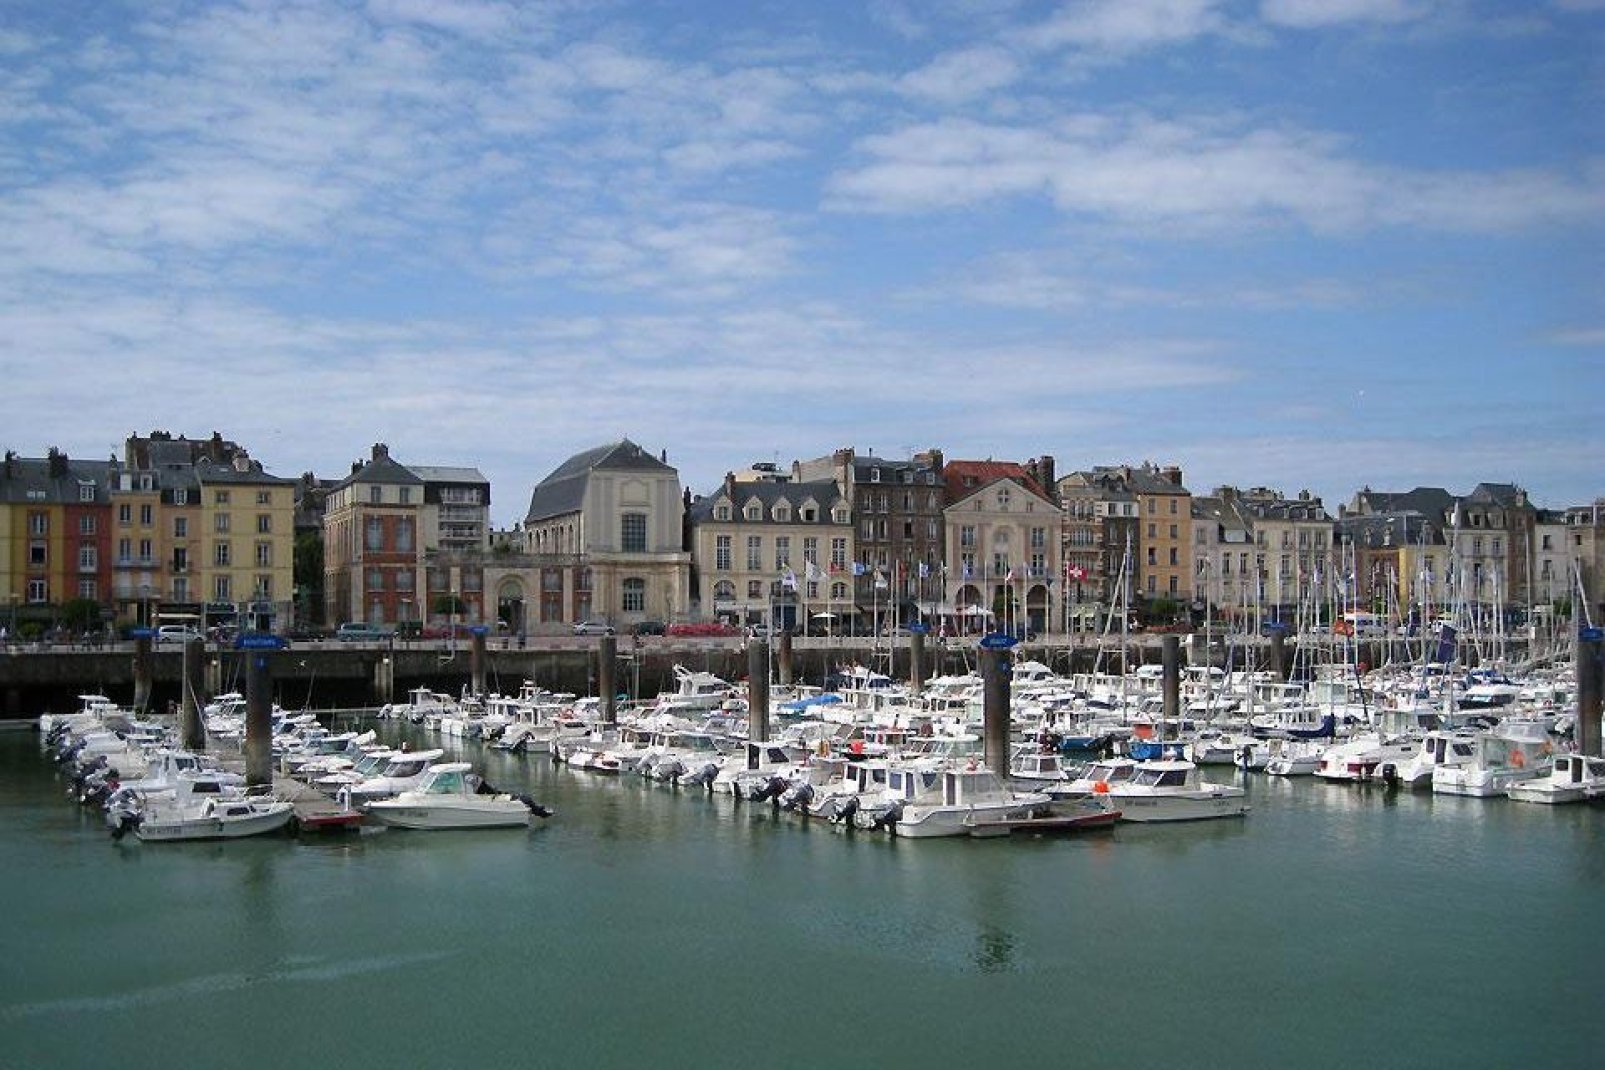 Dieppa è un comune di circa 35.000 abitanti situato nell'Alta Normandia nel dipartimento della Senna Marittima